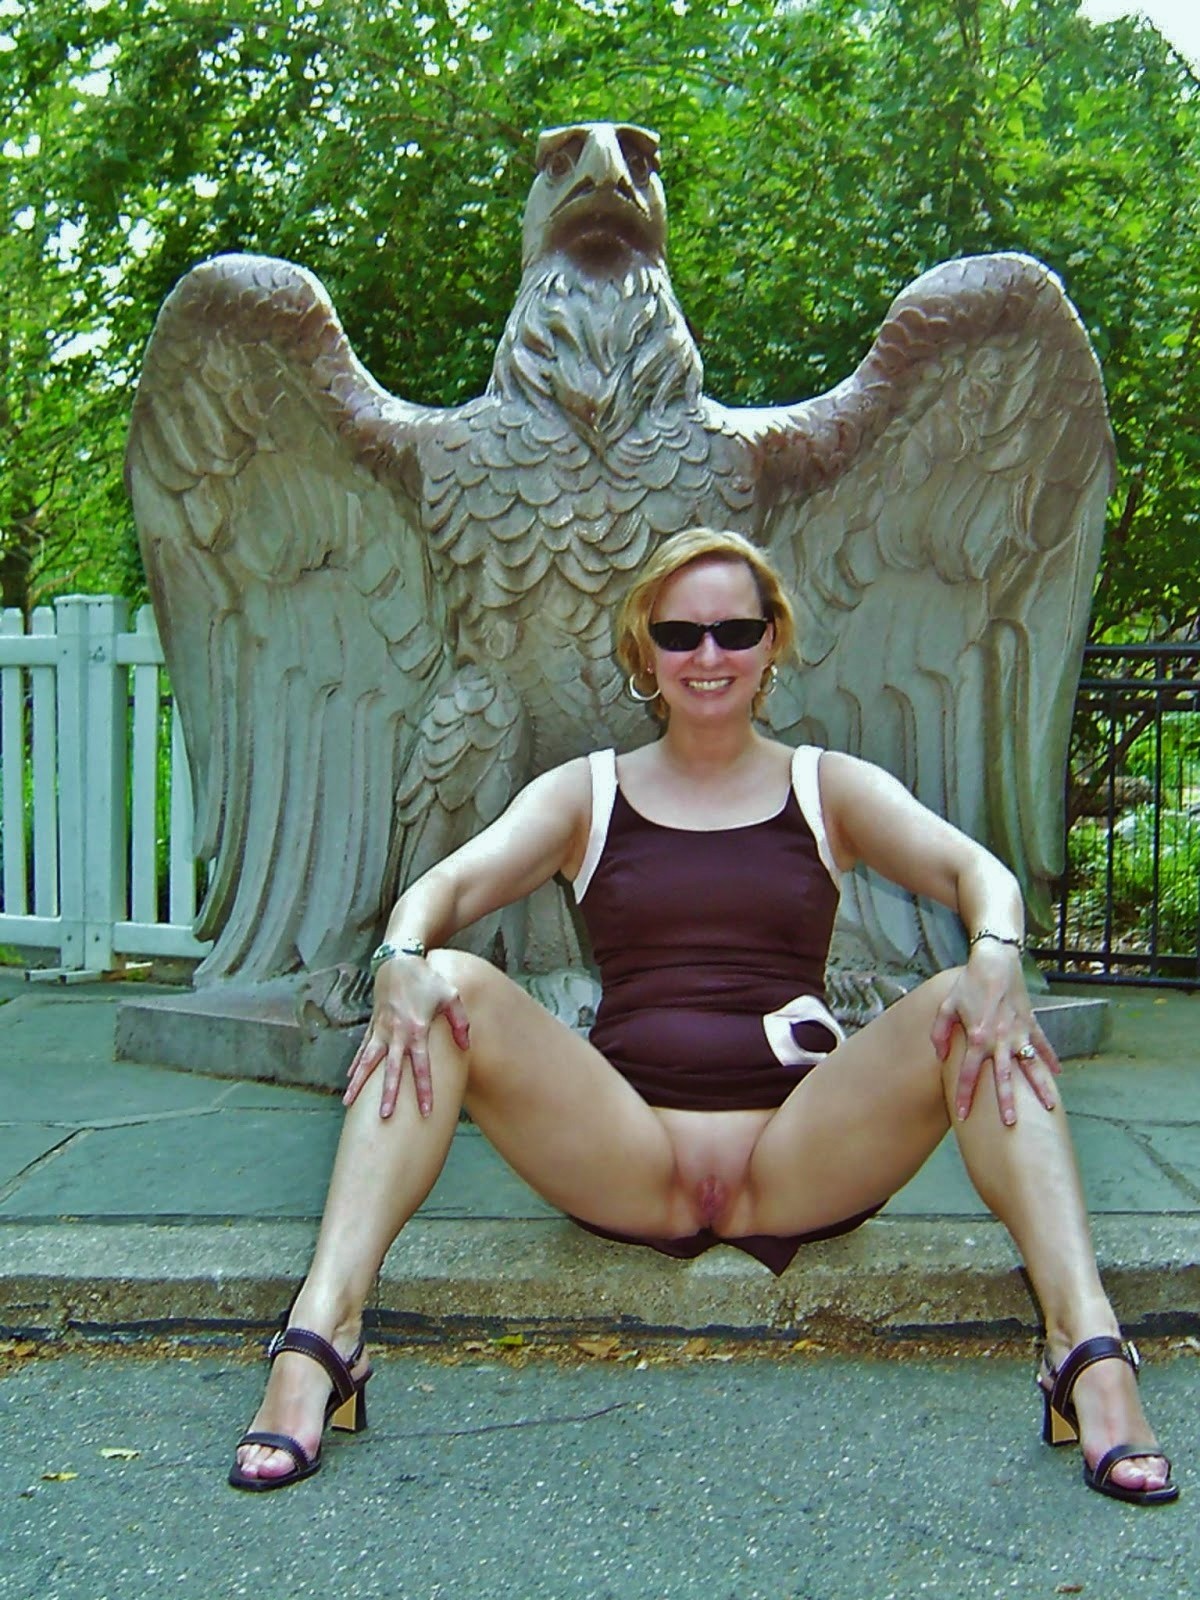 Hot sexy nude women spread eagle